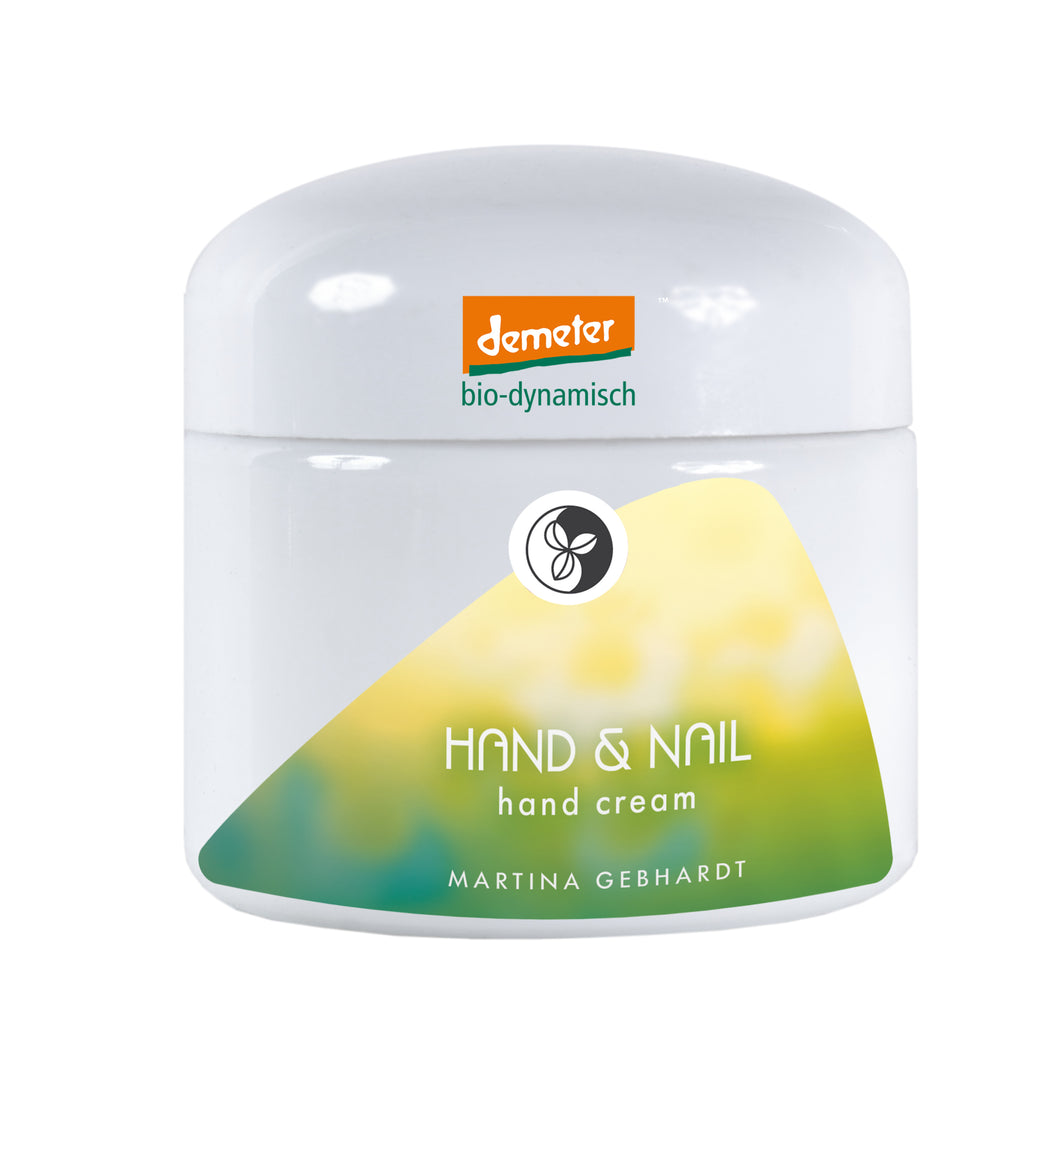 HAND & NAIL hand cream